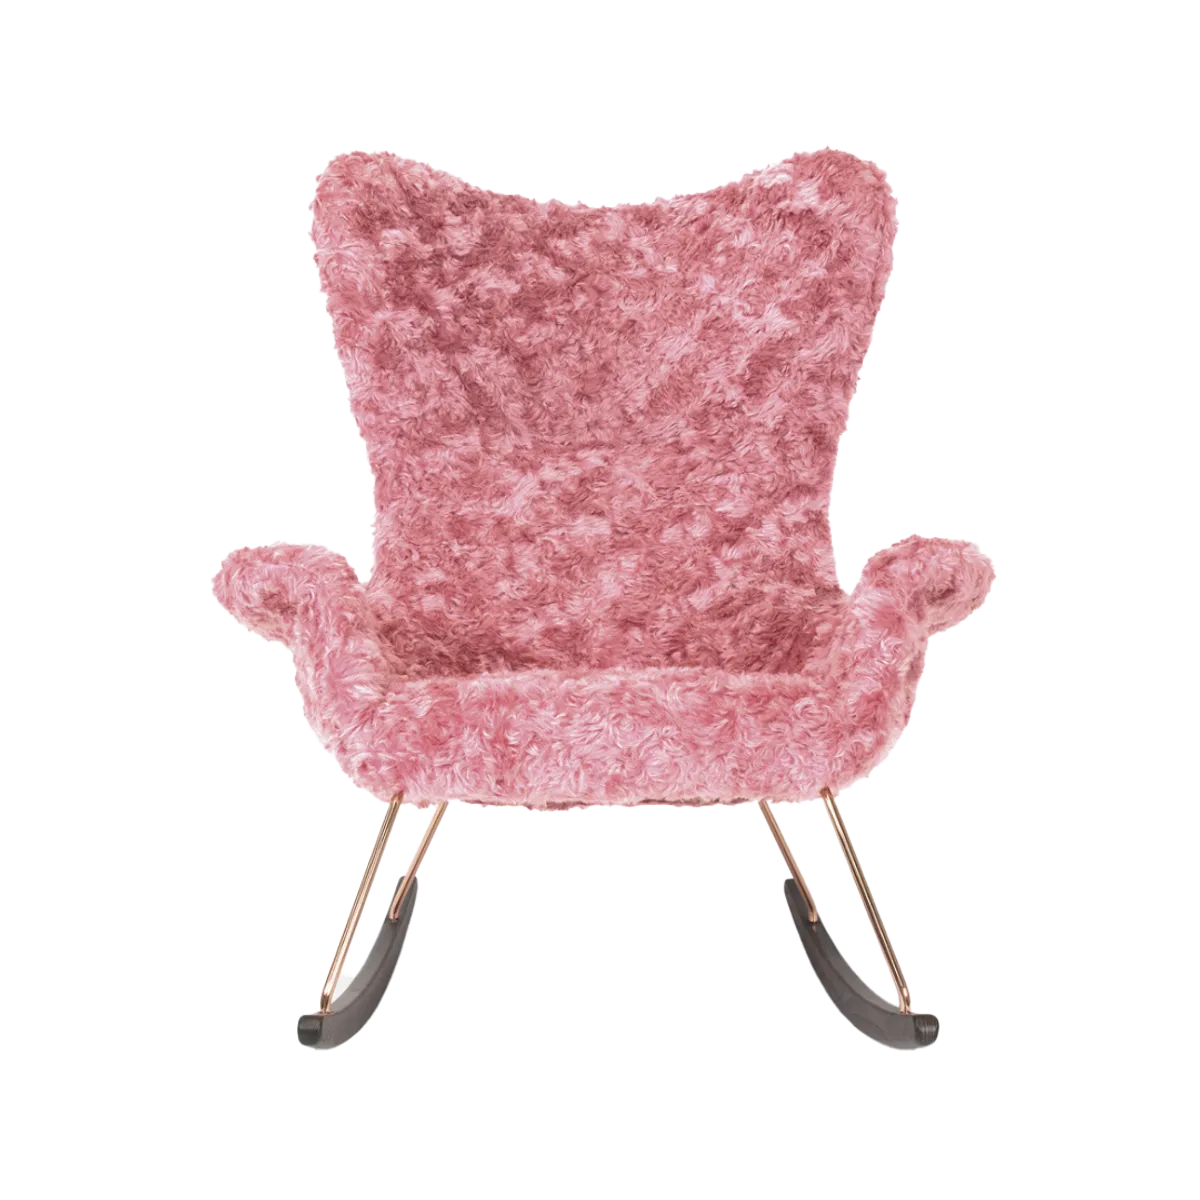 3 Sereen Fluffy Lounge Chair